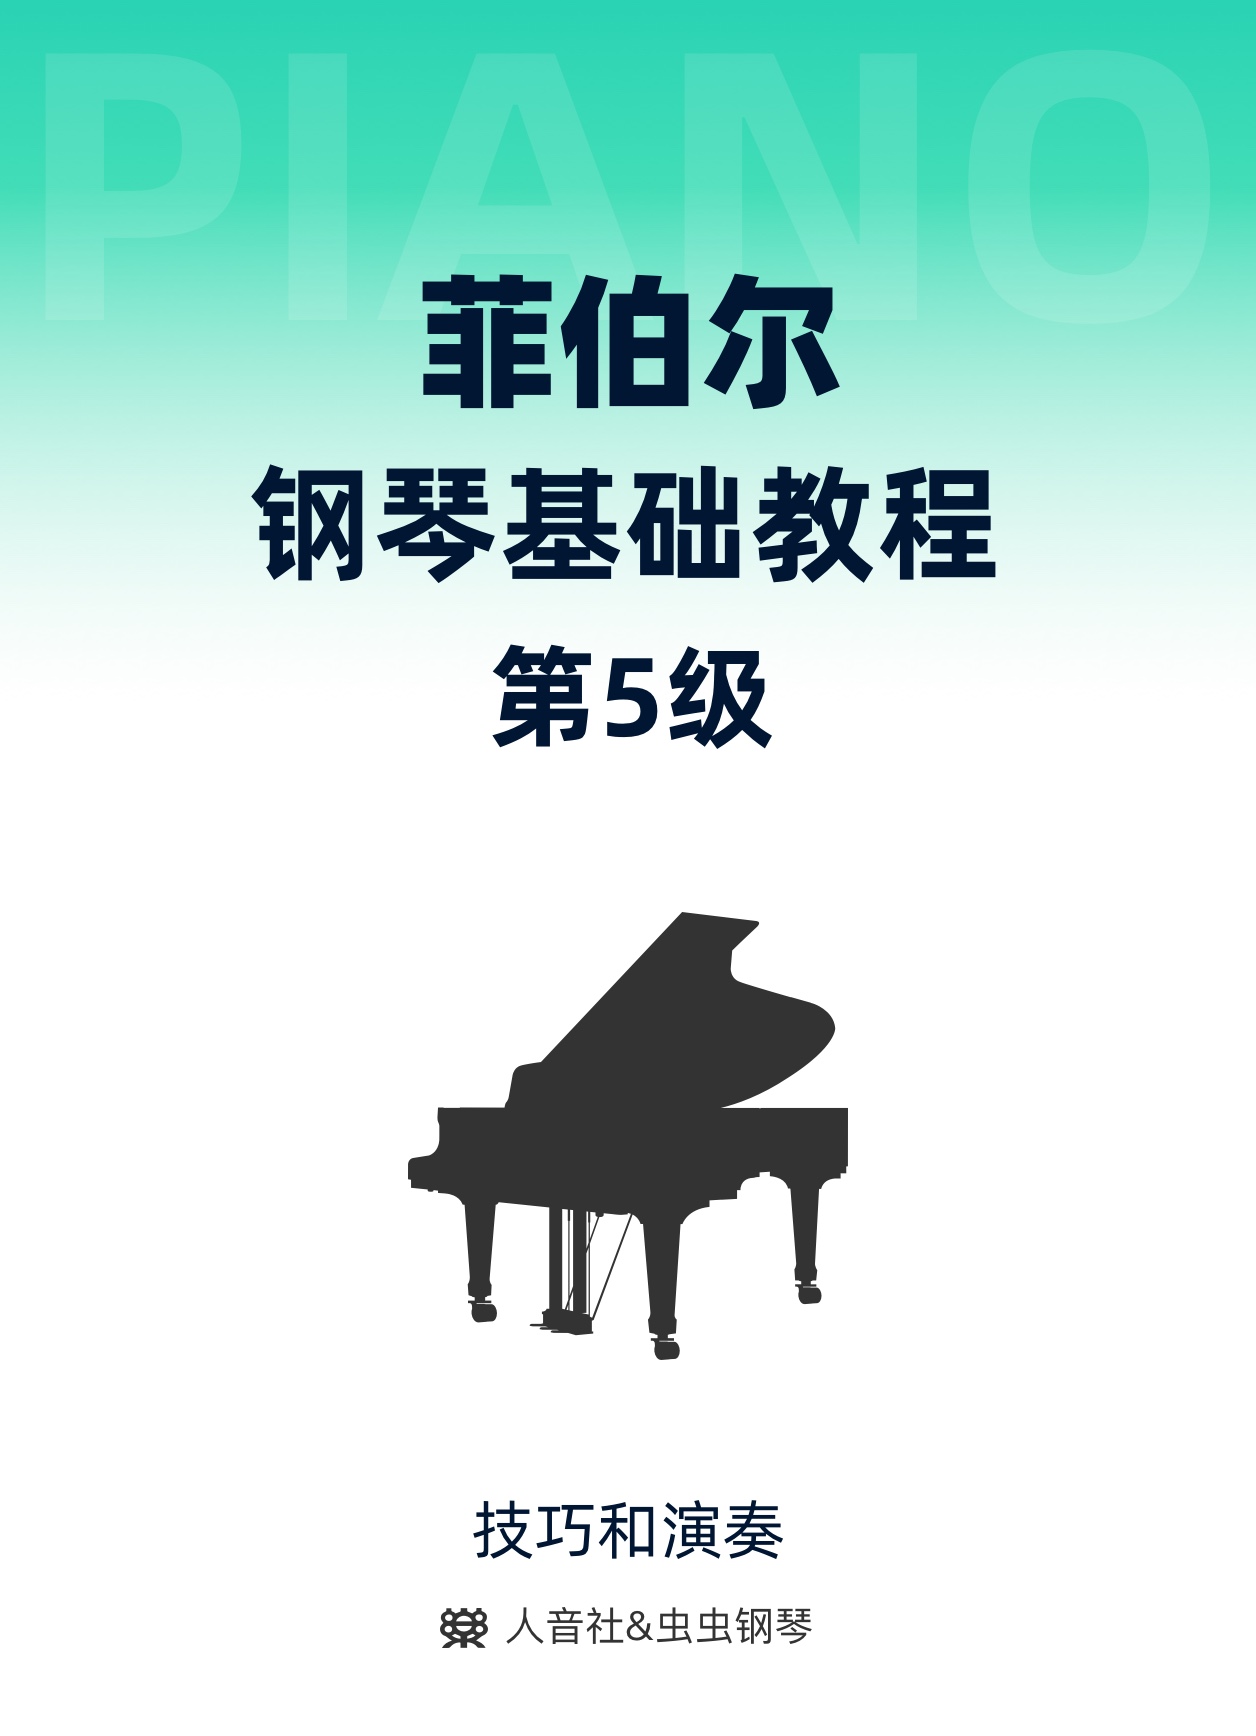 23-加线-上方加线上的音符01钢琴简谱 数字双手